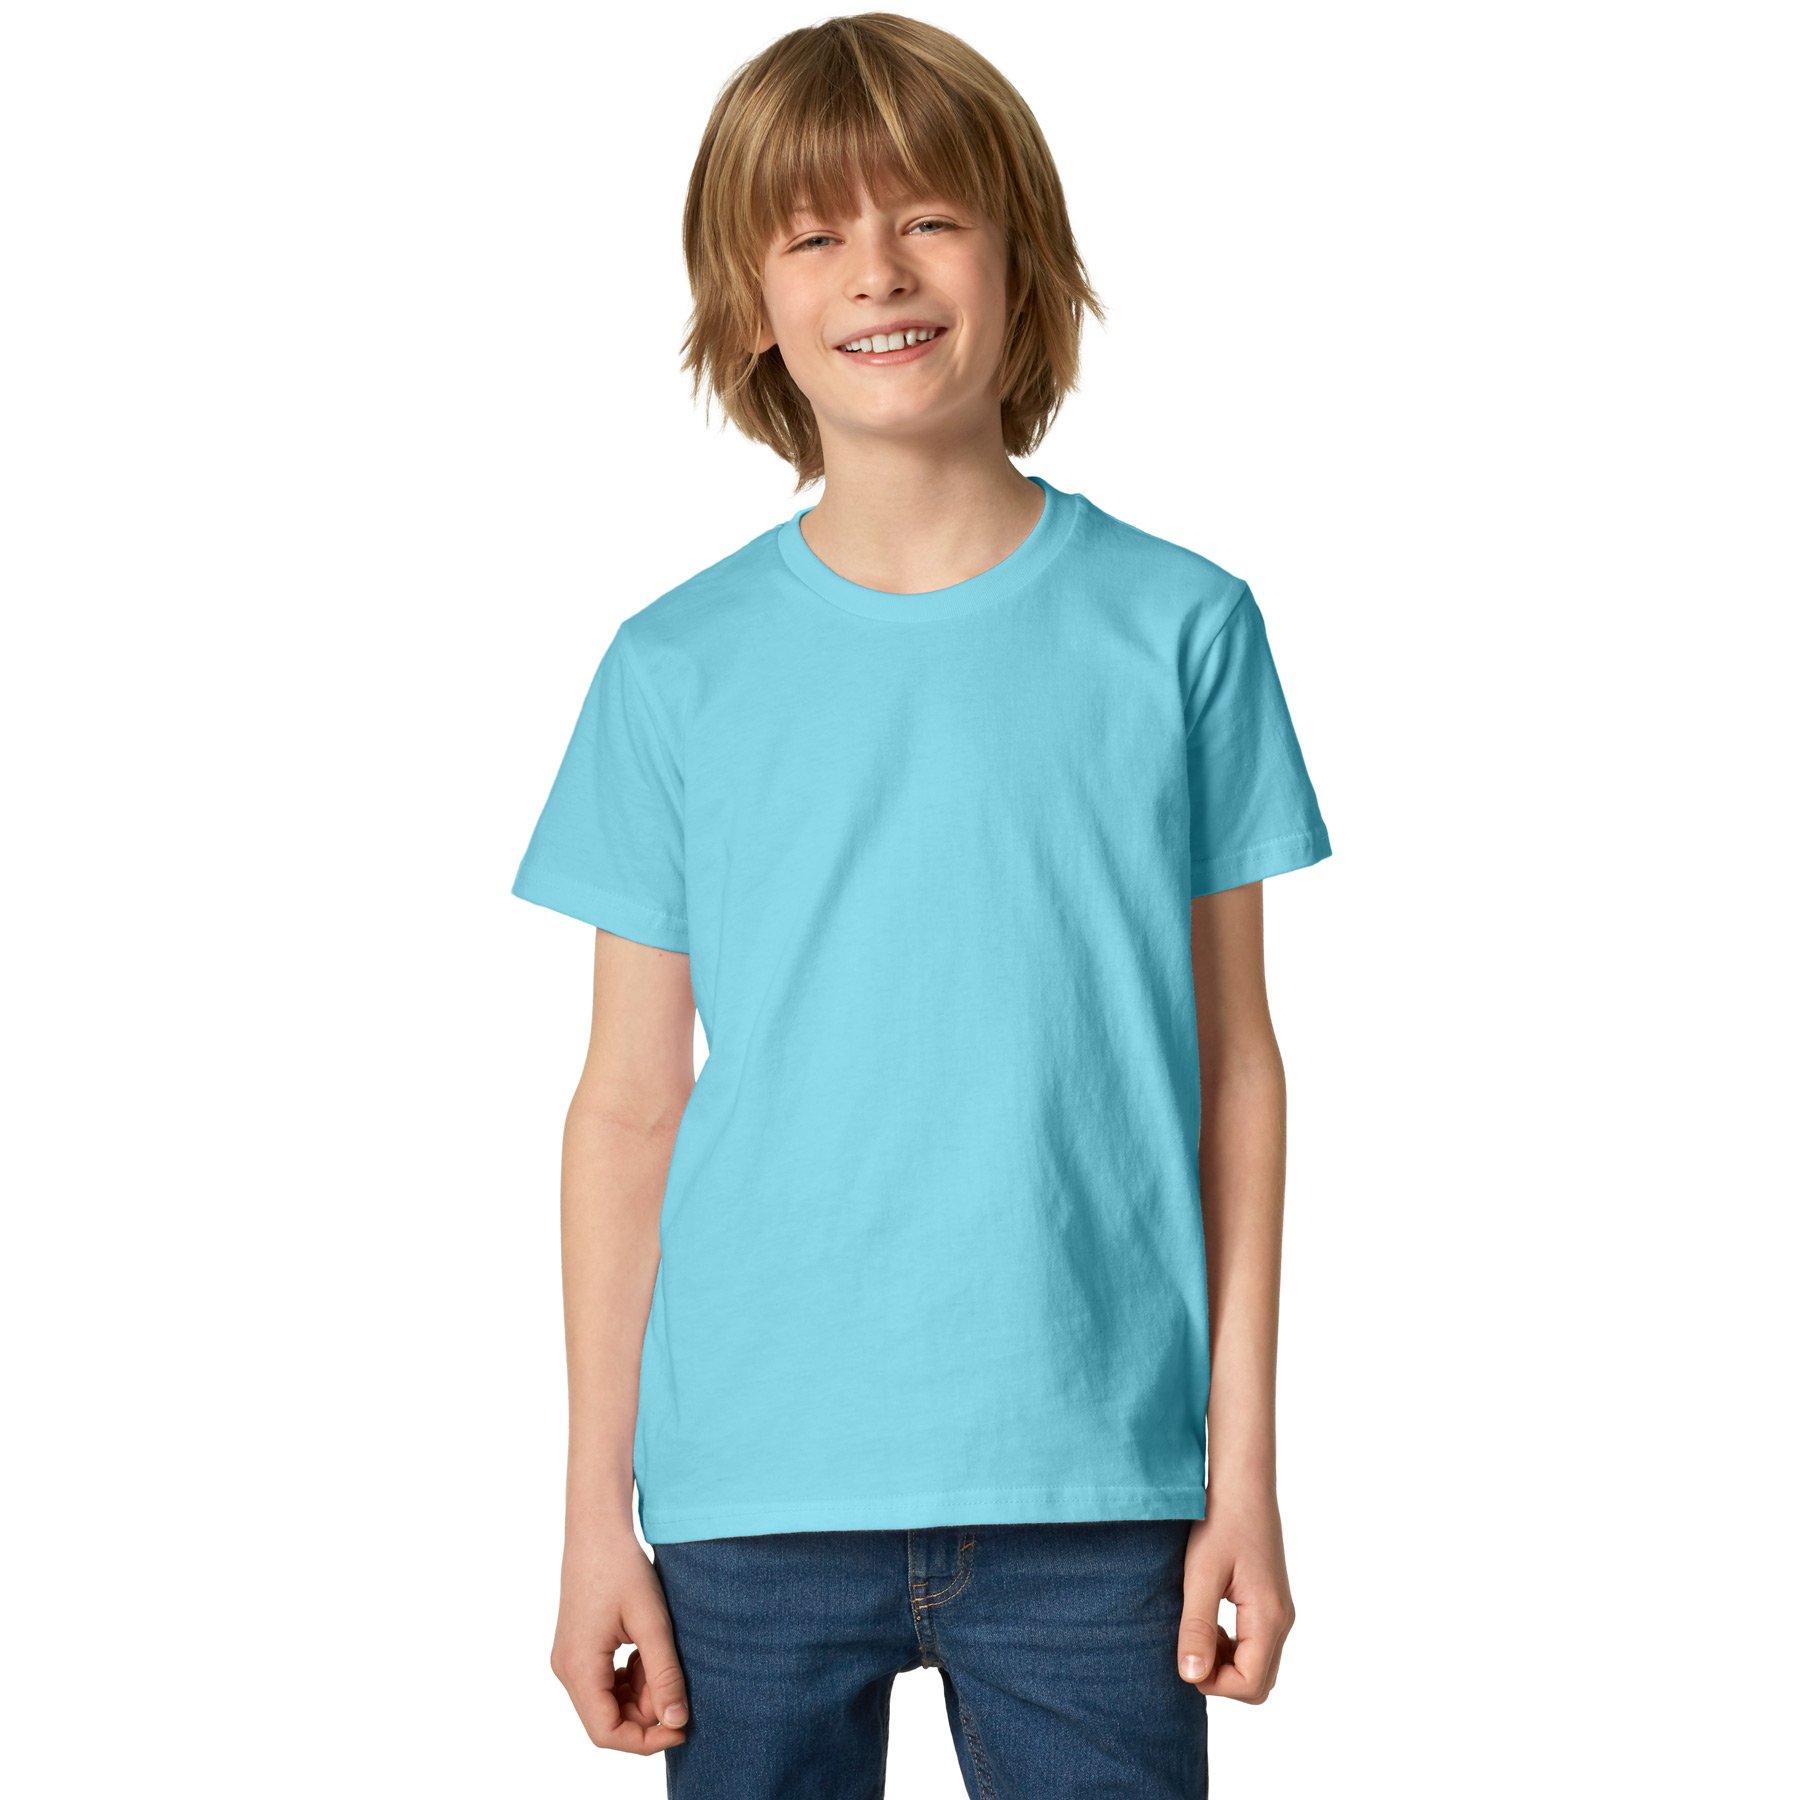 T-shirt Kinder Jungen Hellblau 140 von Tectake